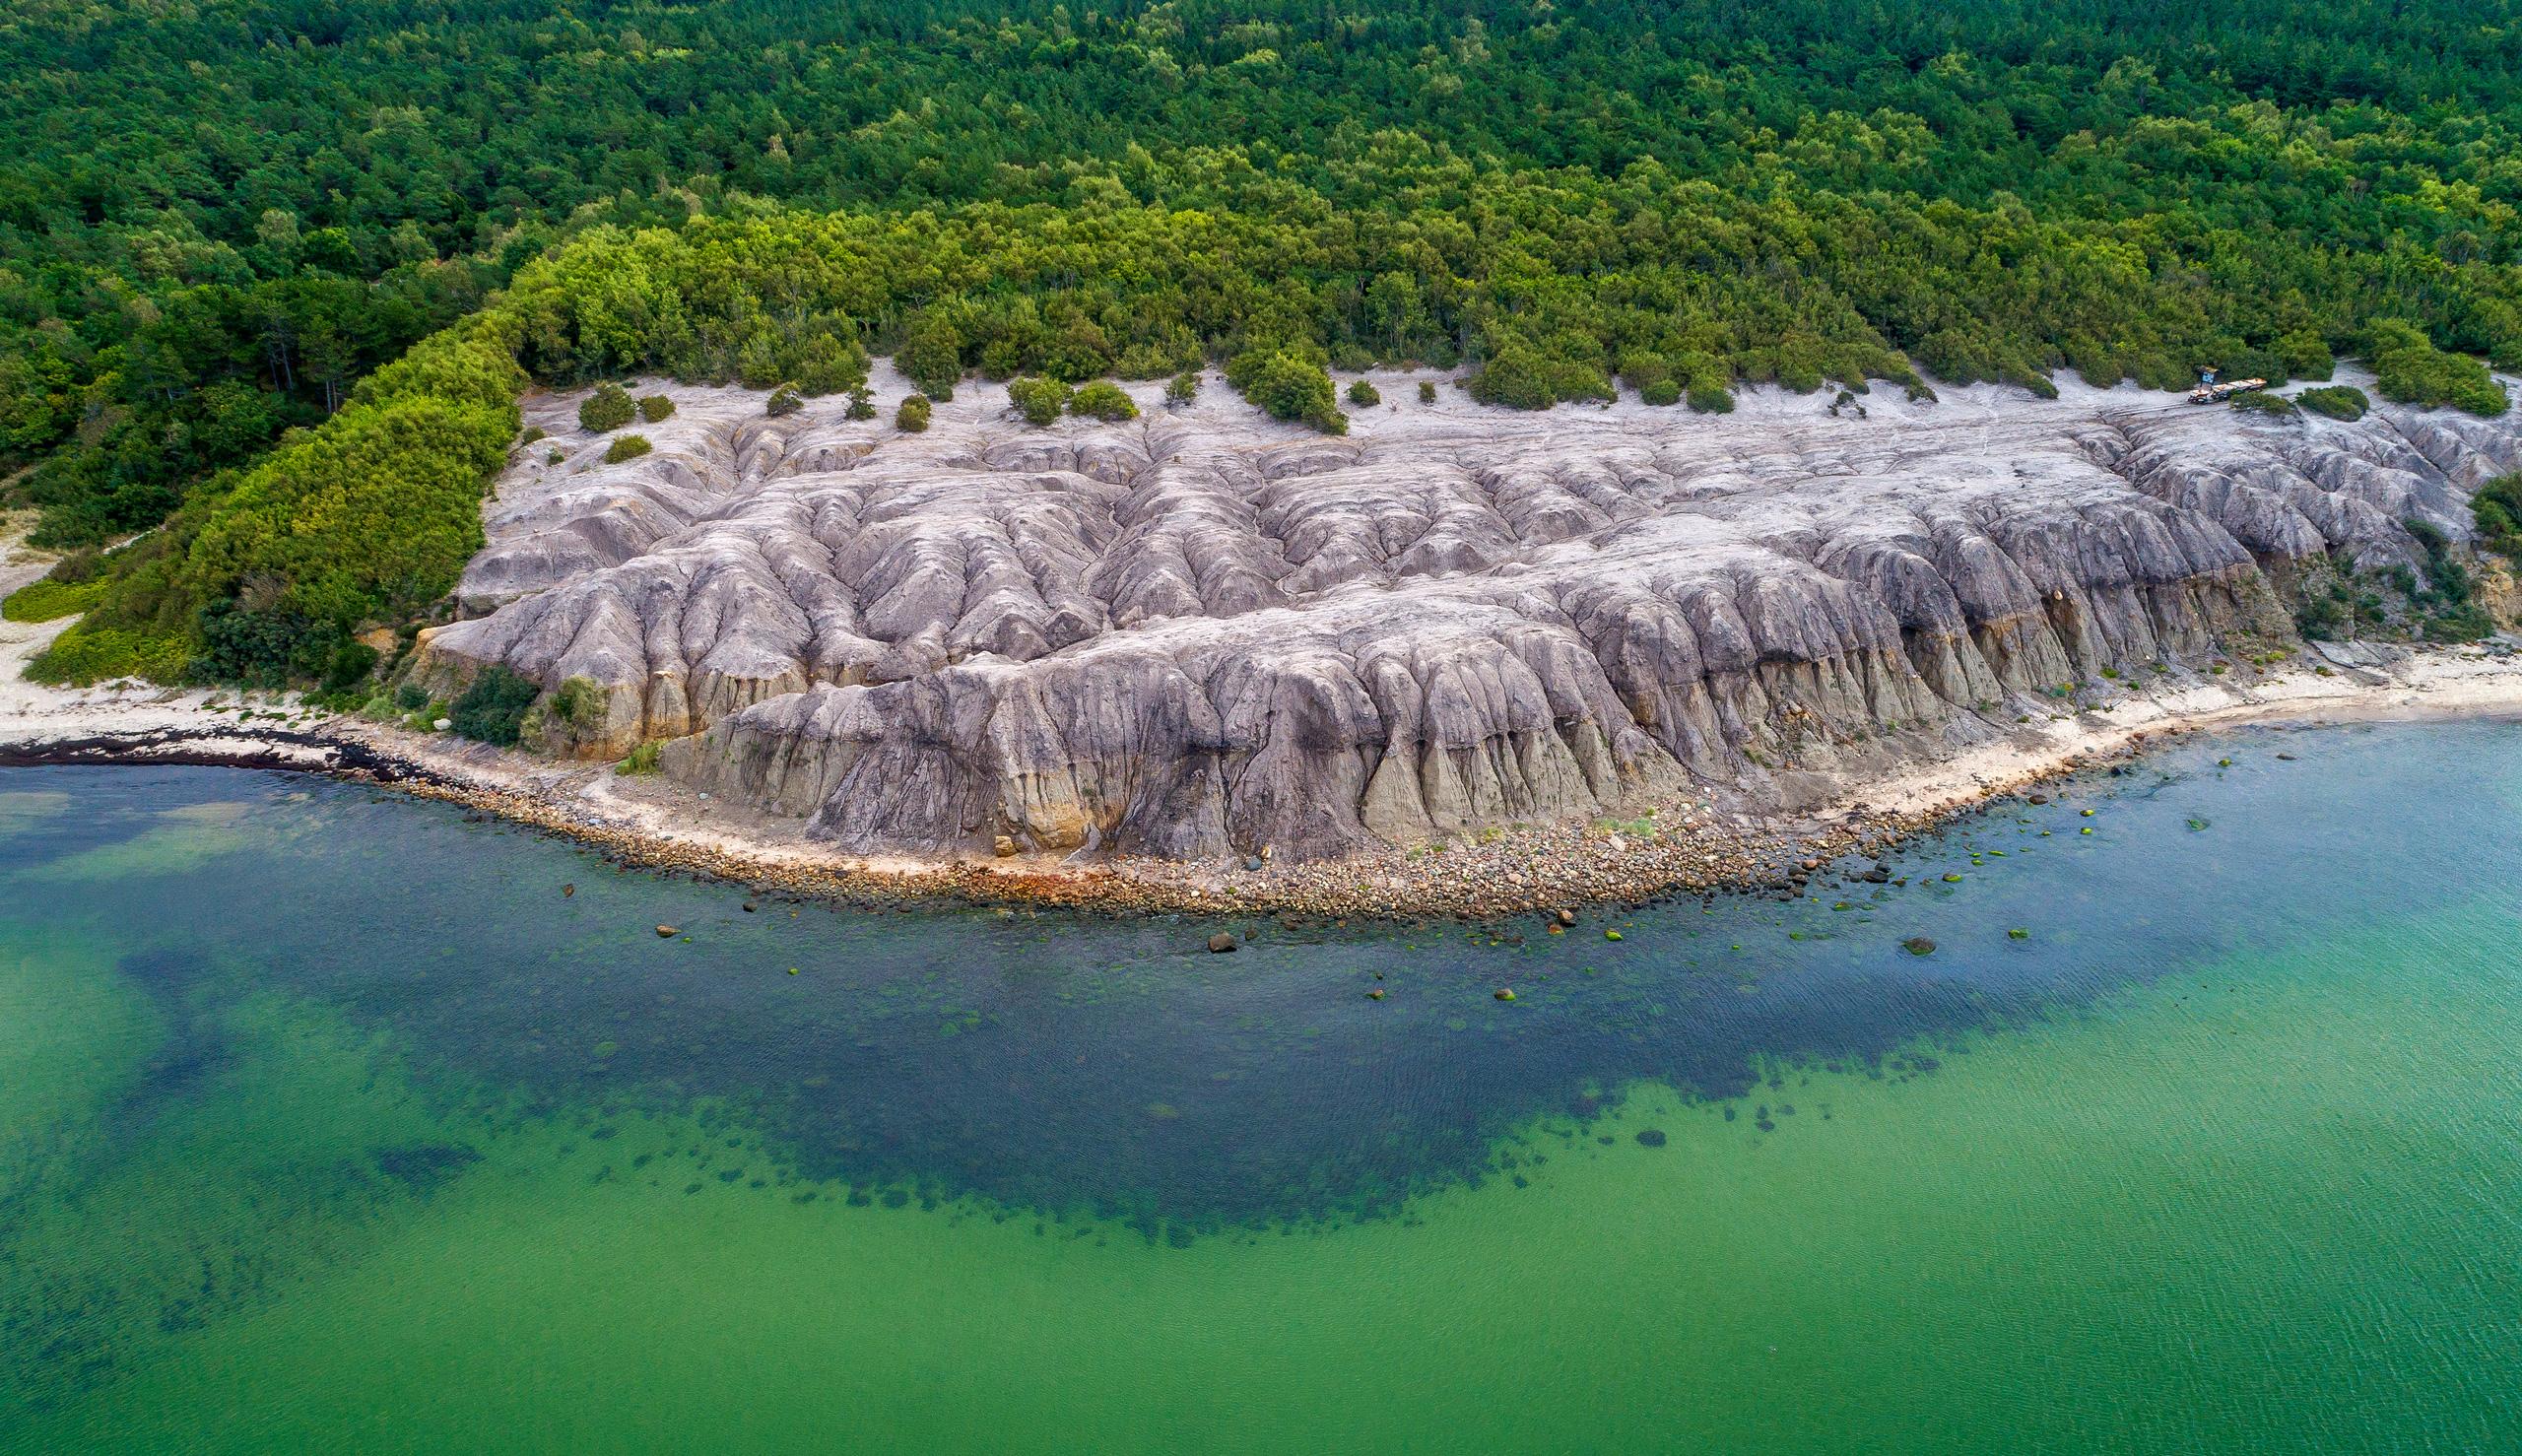 Die bizarre Steinformation der Kultippen bildet einen einzigartigen Kontrast zu den angrenzenden Wäldern und dem türkisblauen Meer. Copyright: Martin Birk / Destination Bornholm